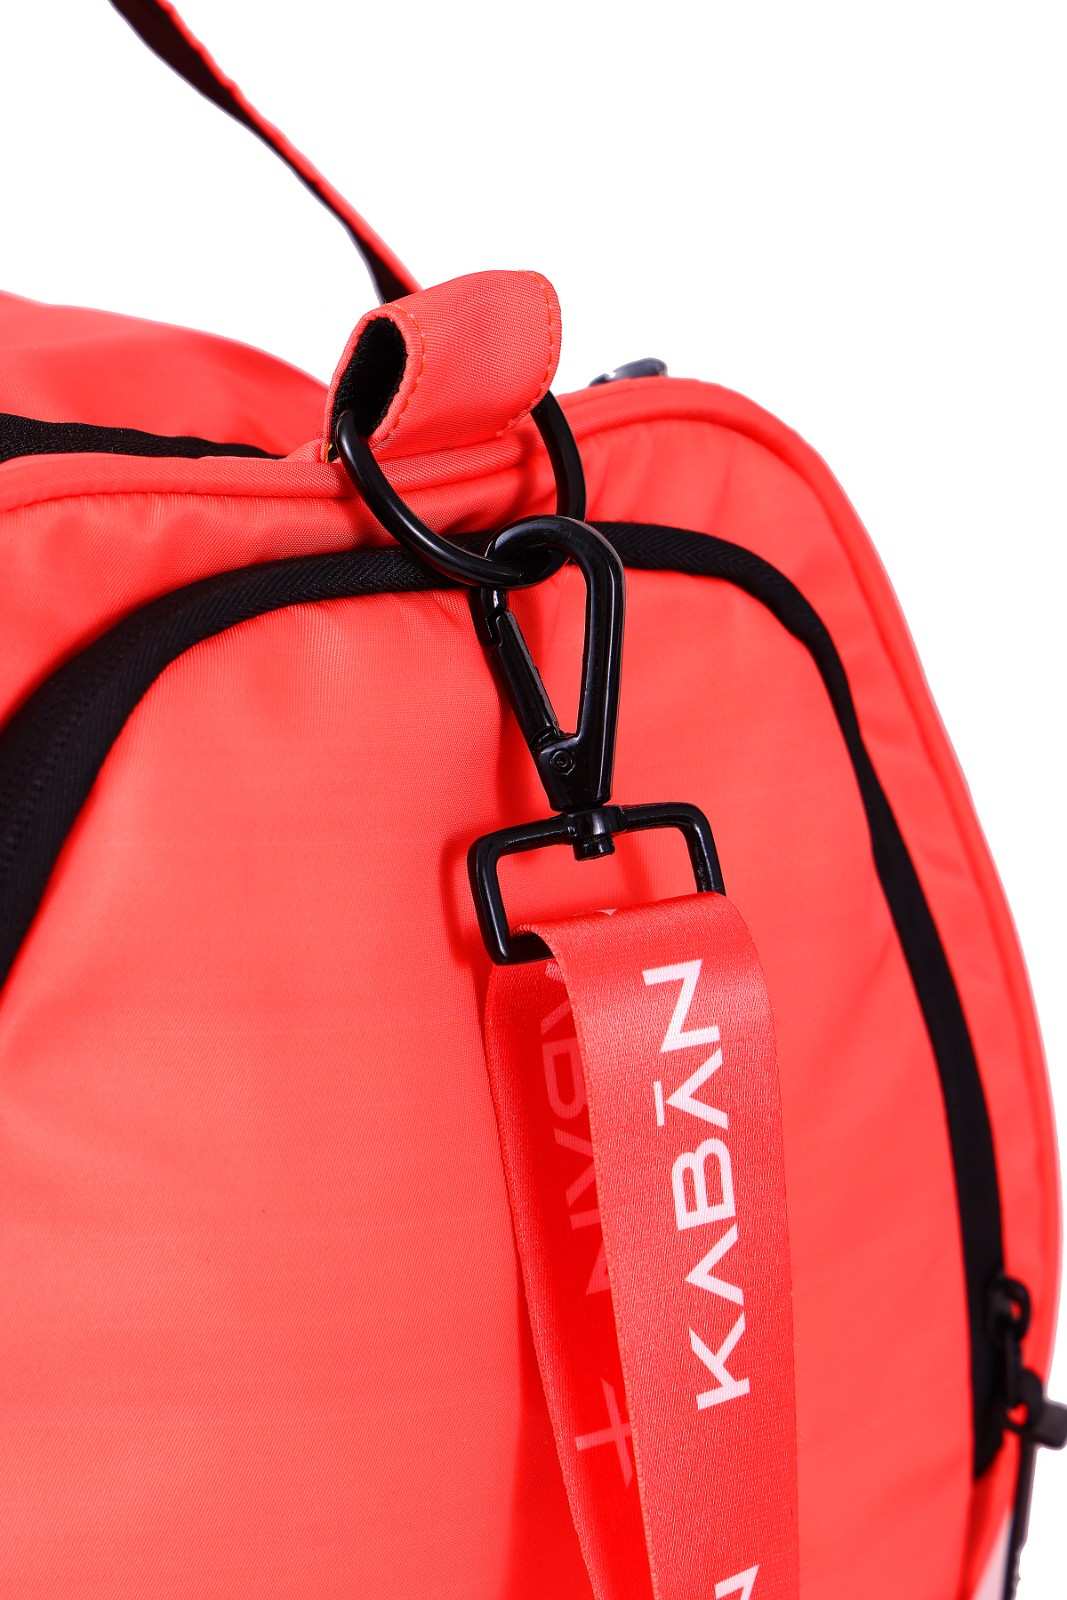 Coral Crush Orange Water-Resistant Duffle bag Gym bag